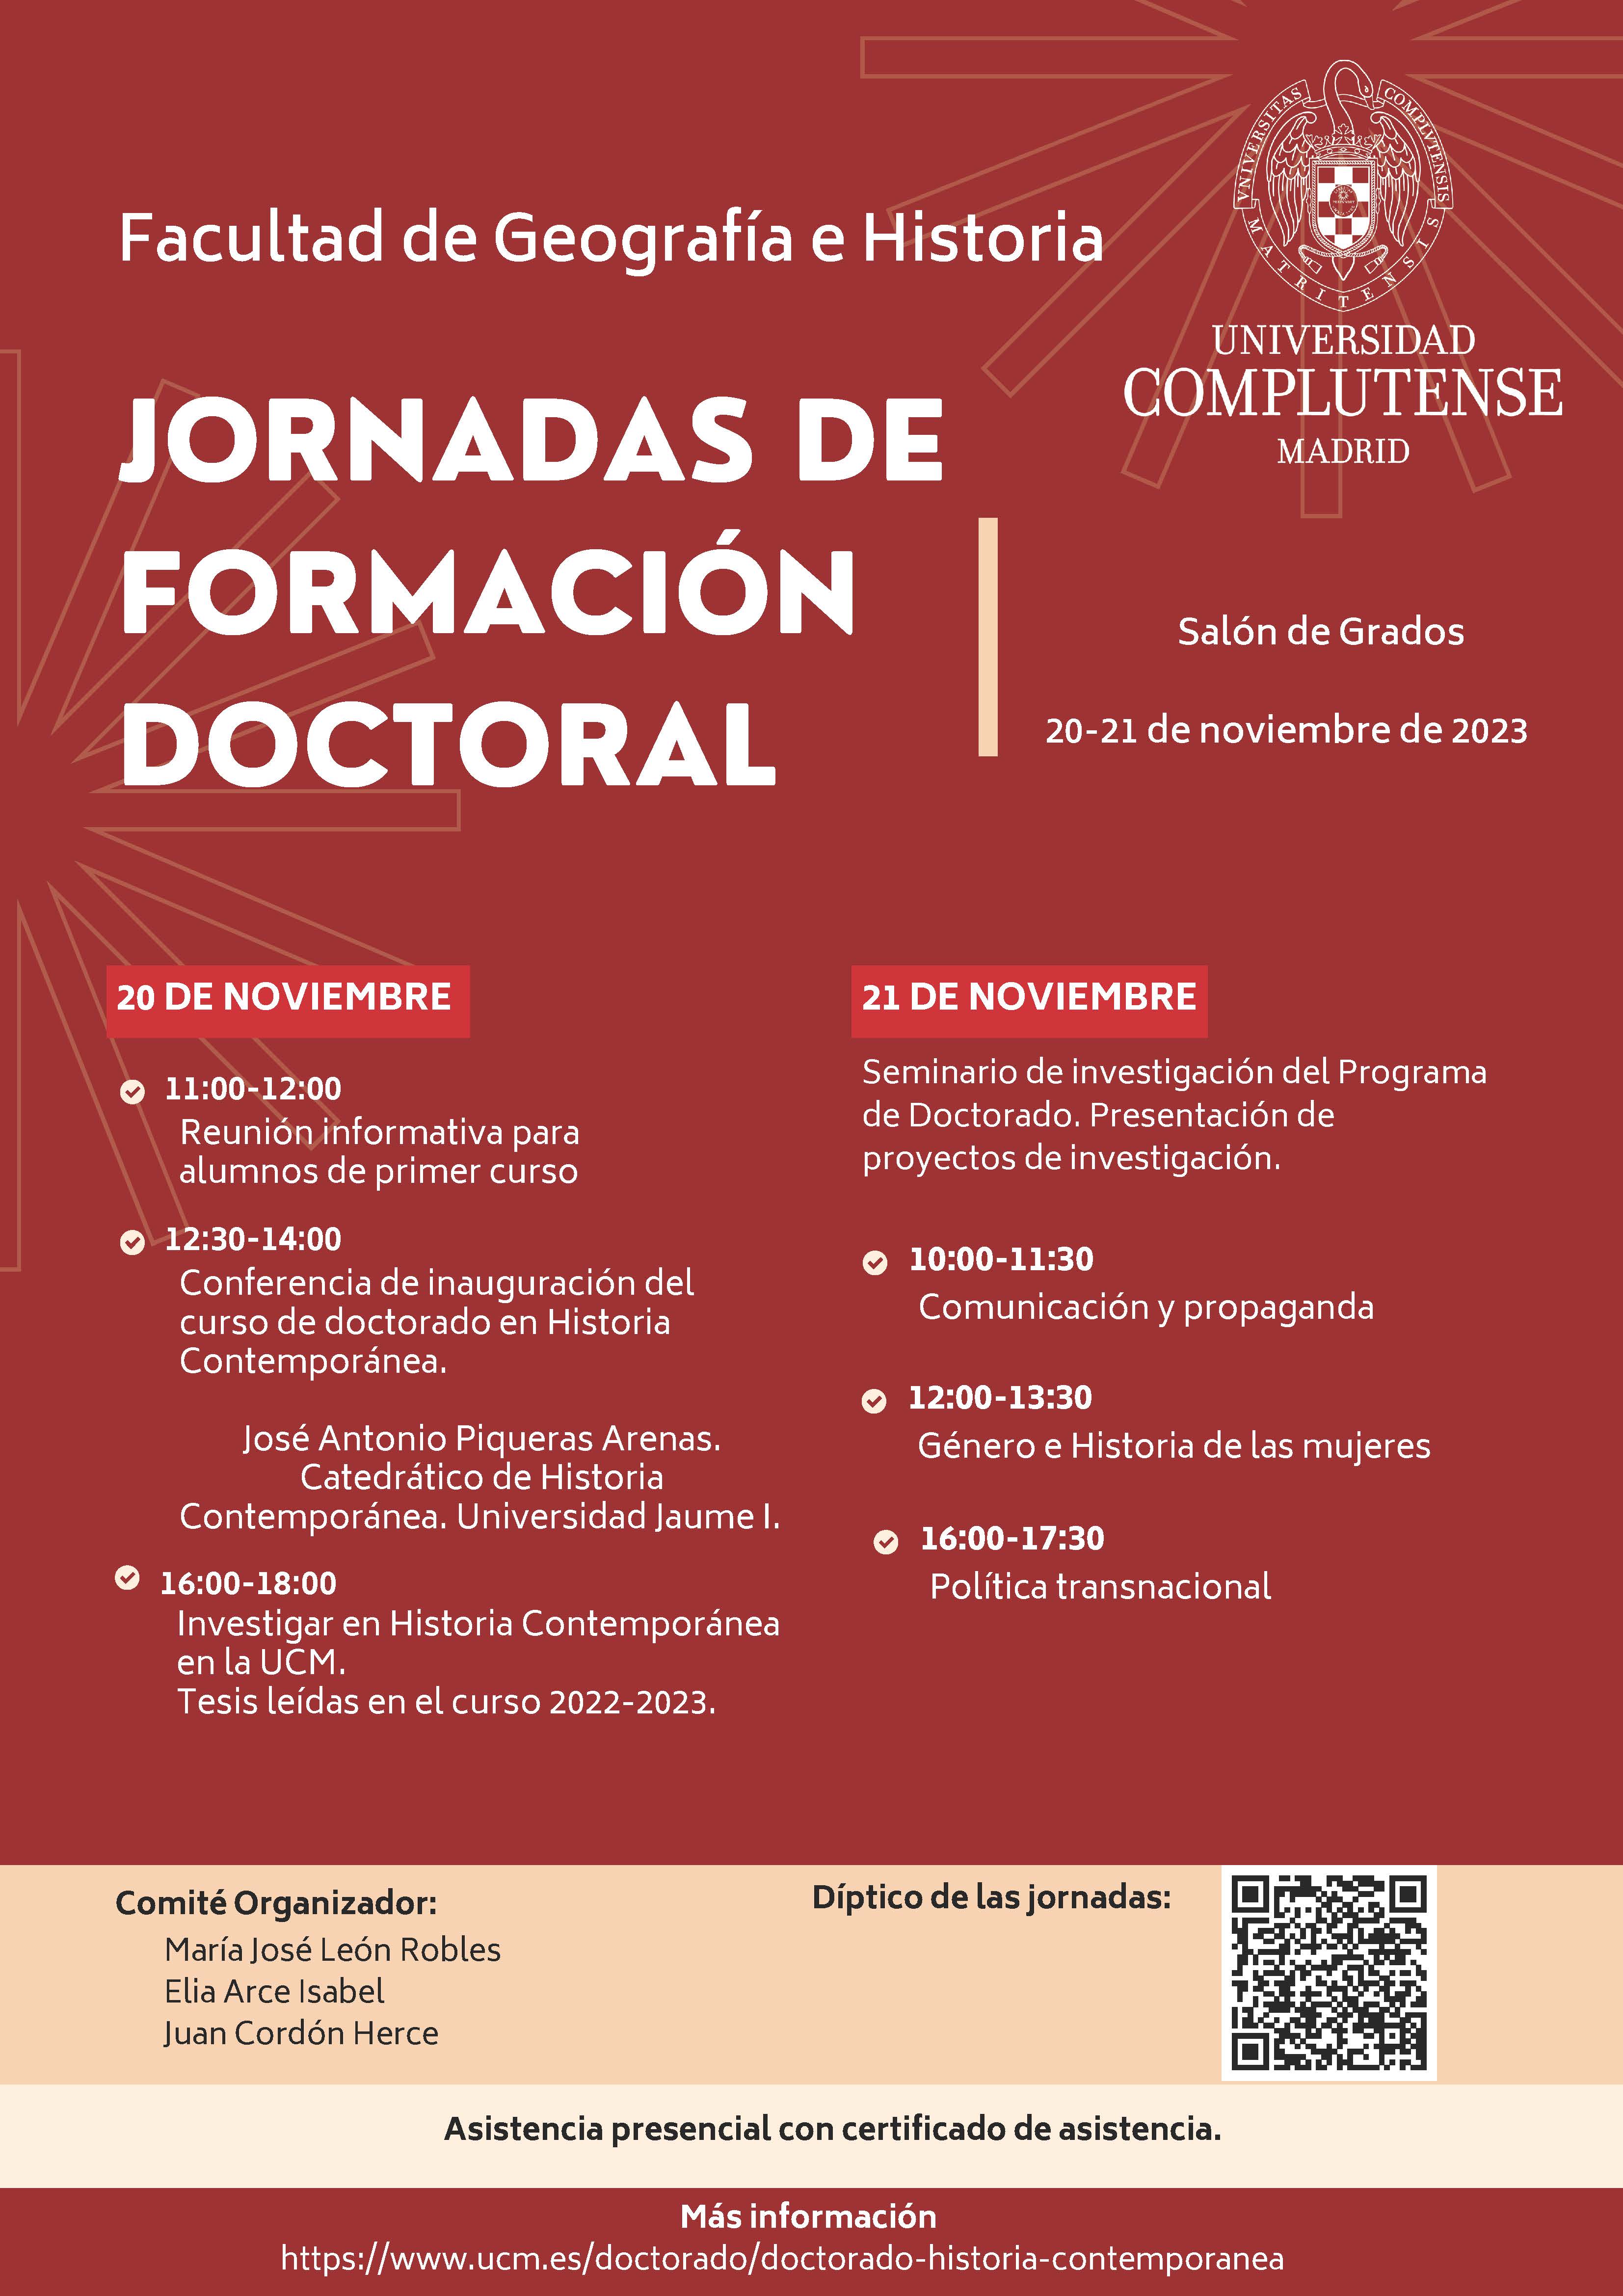 Jornadas de Formación Doctoral - Historia Contemporánea (20-21.11.2023)